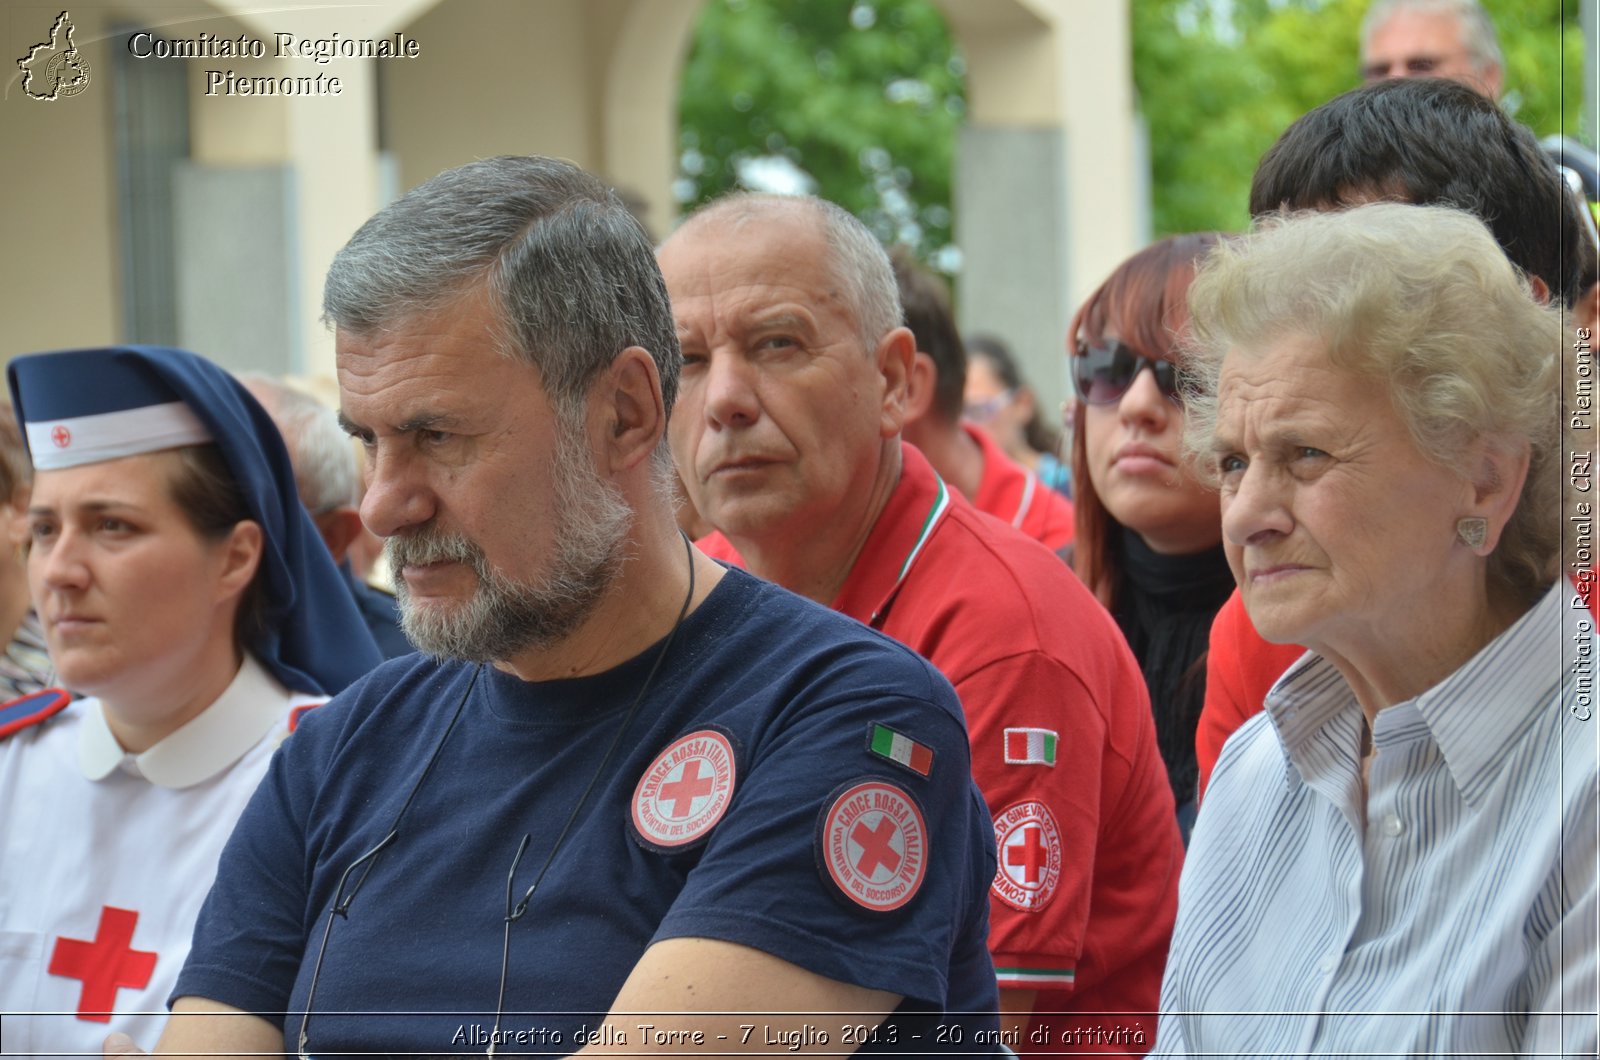 Albaretto della Torre - 7 Luglio 2013 - 20 anni di attivit - Croce Rossa Italiana - Comitato Regionale del Piemonte